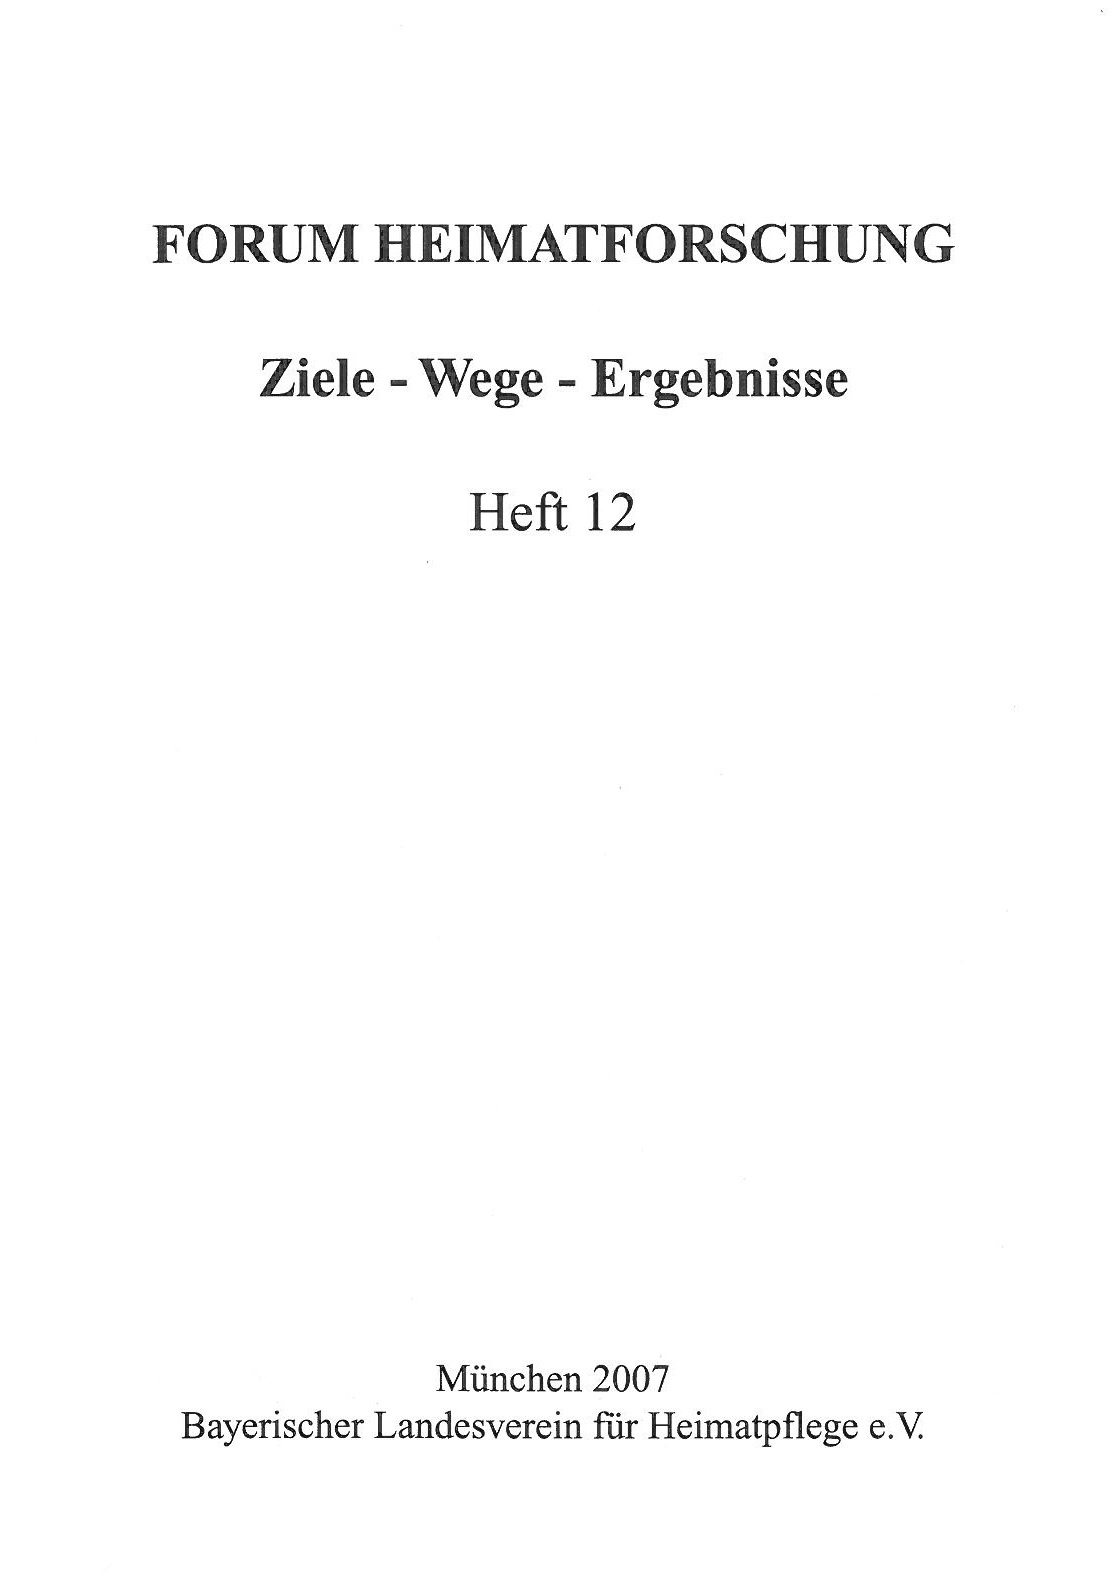 Forum Heimatforschung 12